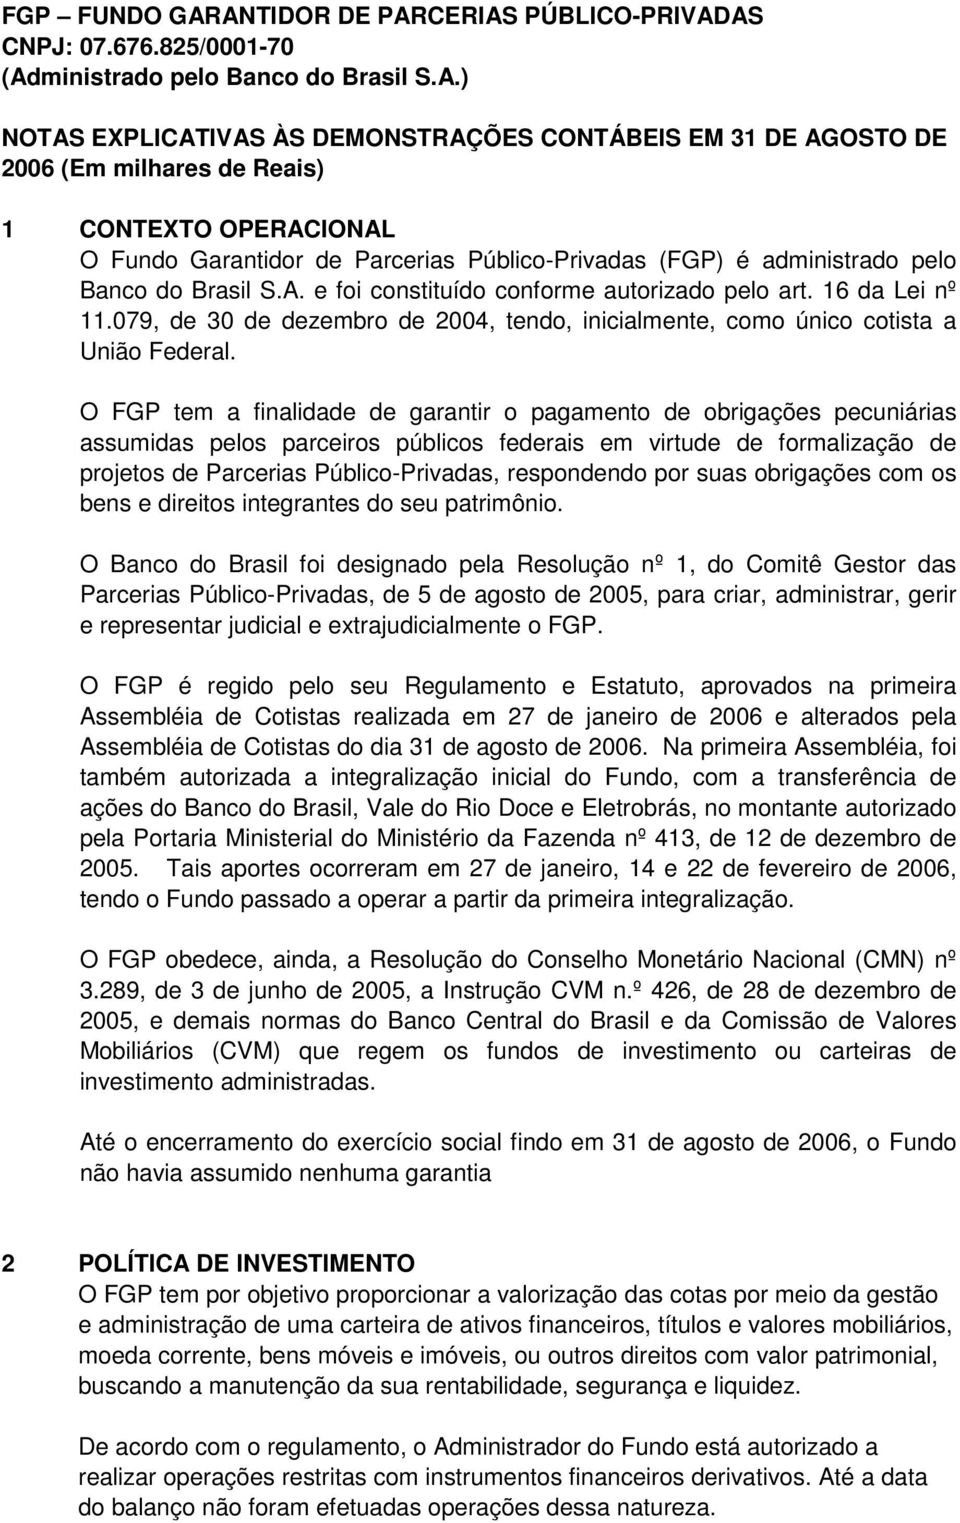 CONTEXTO OPERACIONAL O Fundo Garantidor de Parcerias Público-Privadas (FGP) é administrado pelo Banco do Brasil S.A. e foi constituído conforme autorizado pelo art. 16 da Lei nº 11.